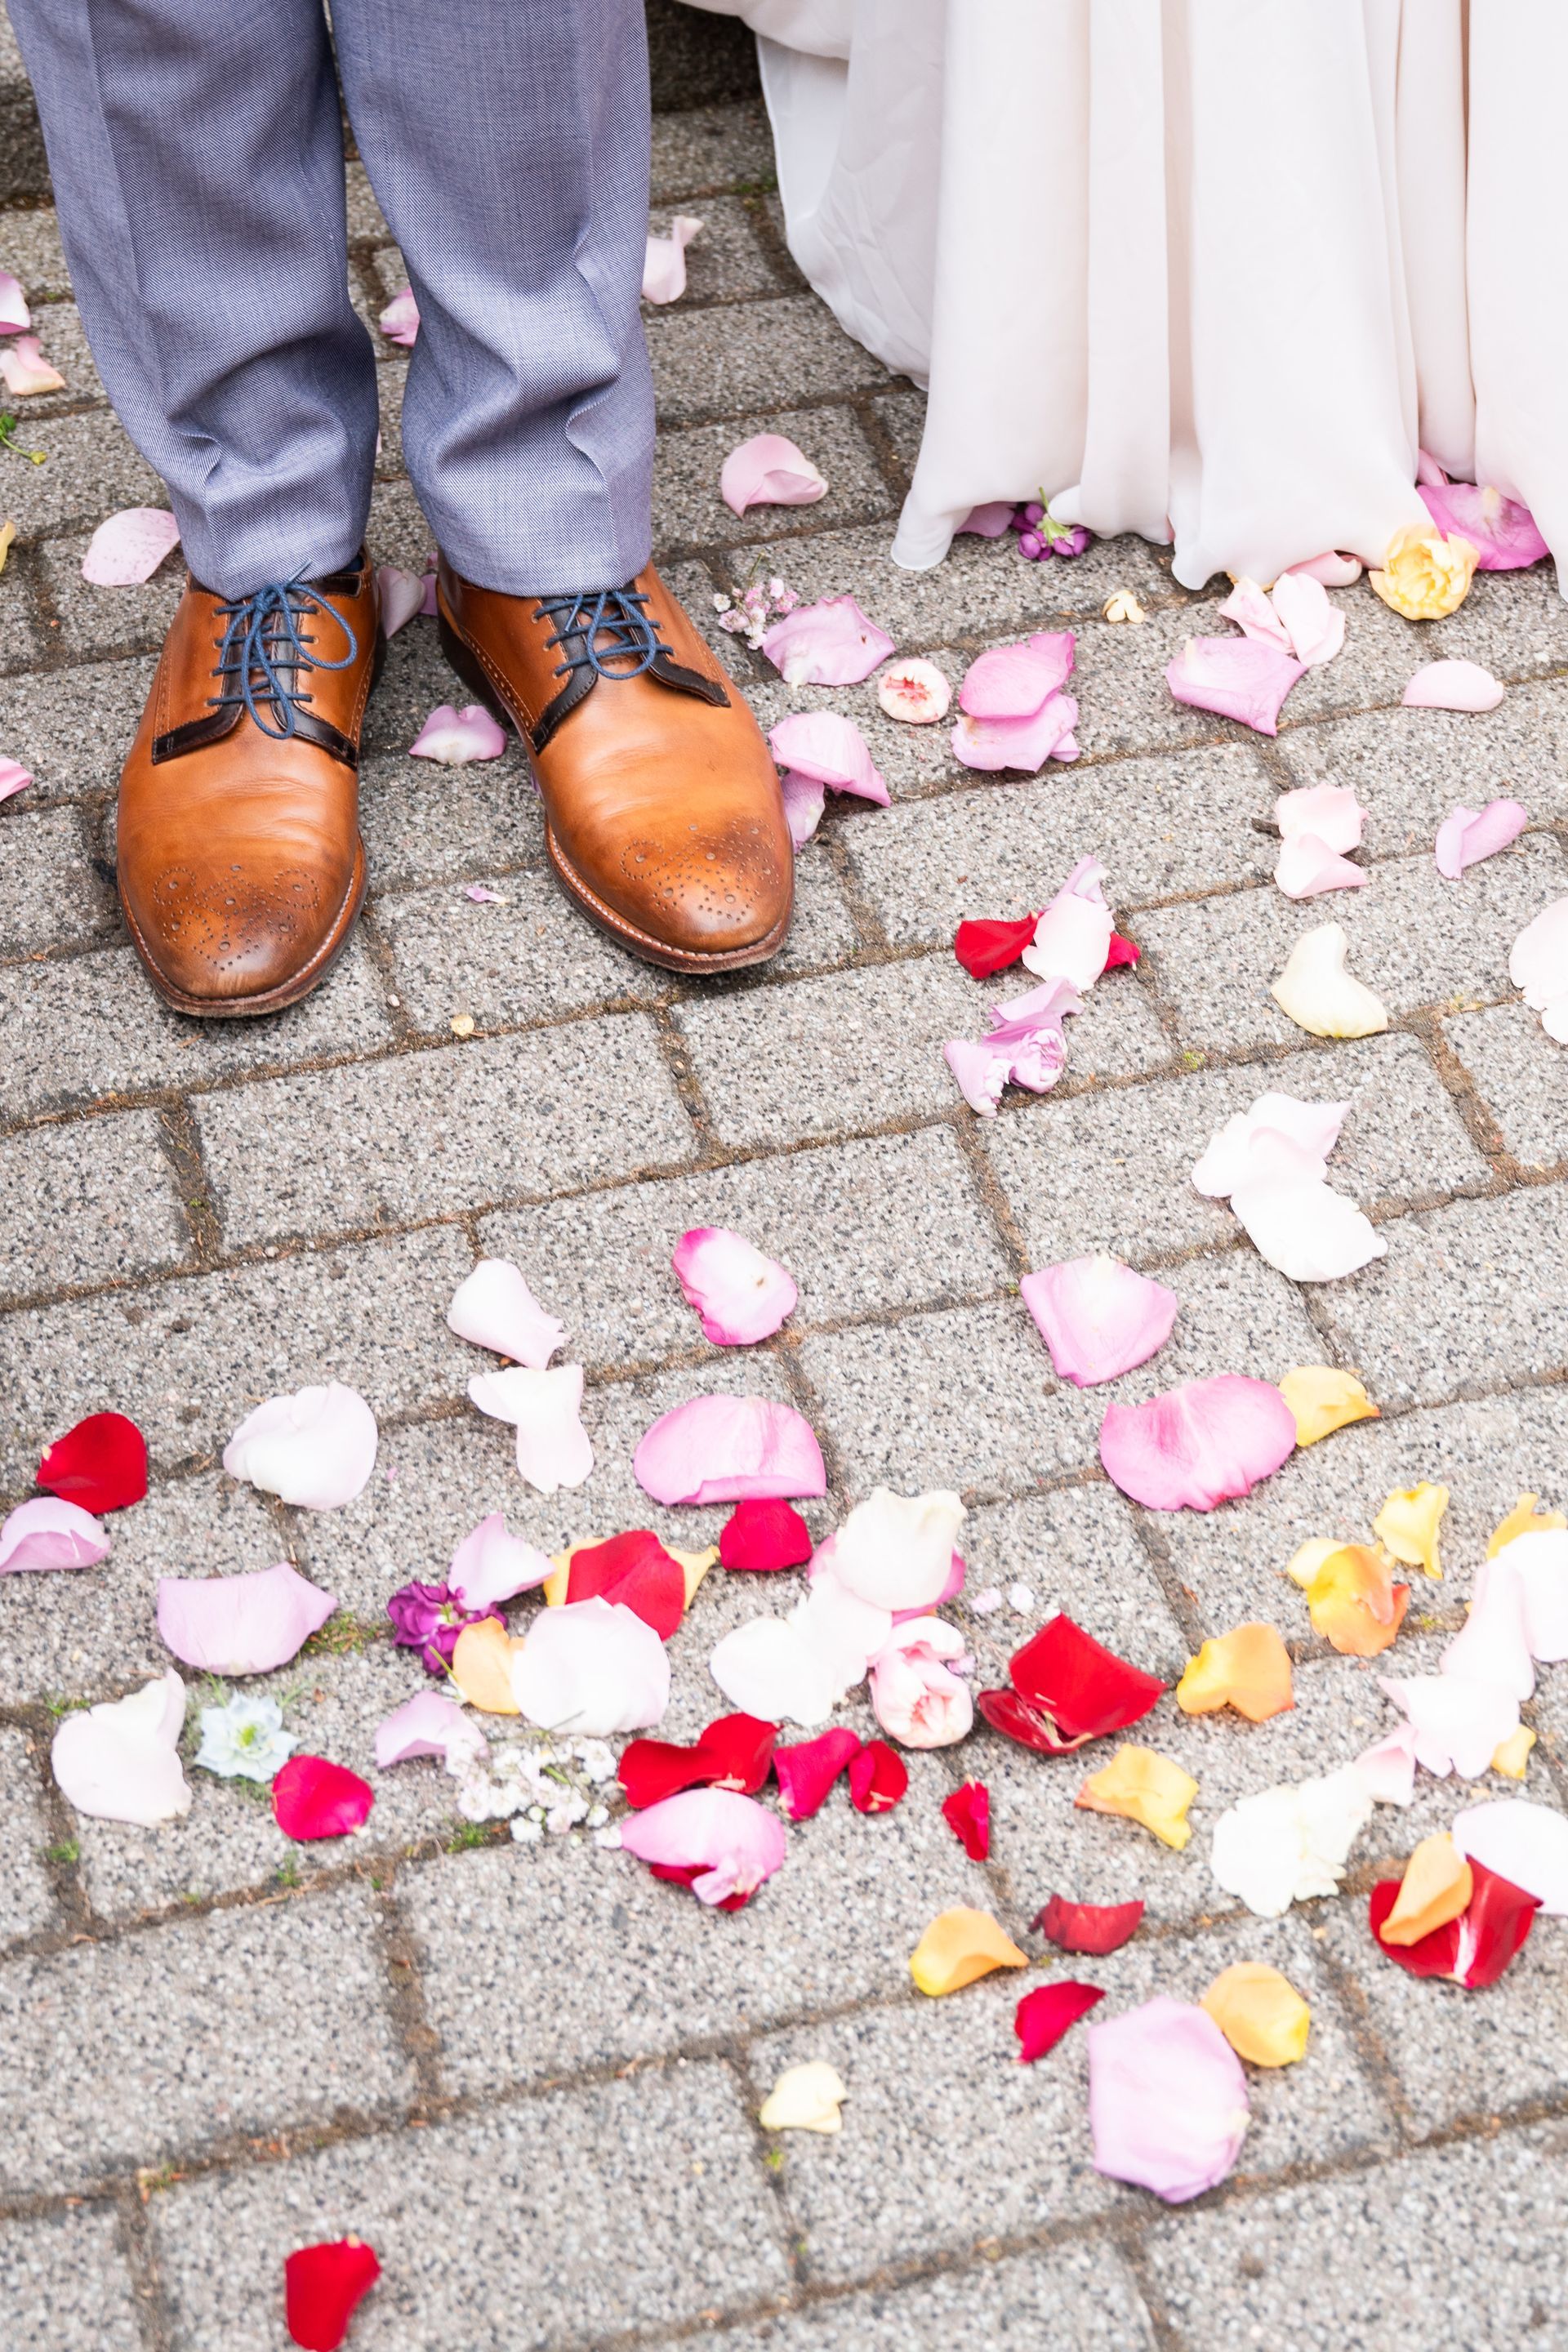 Rosenblätter liegen auf dem Boden, Schuhe vom Bräutigam